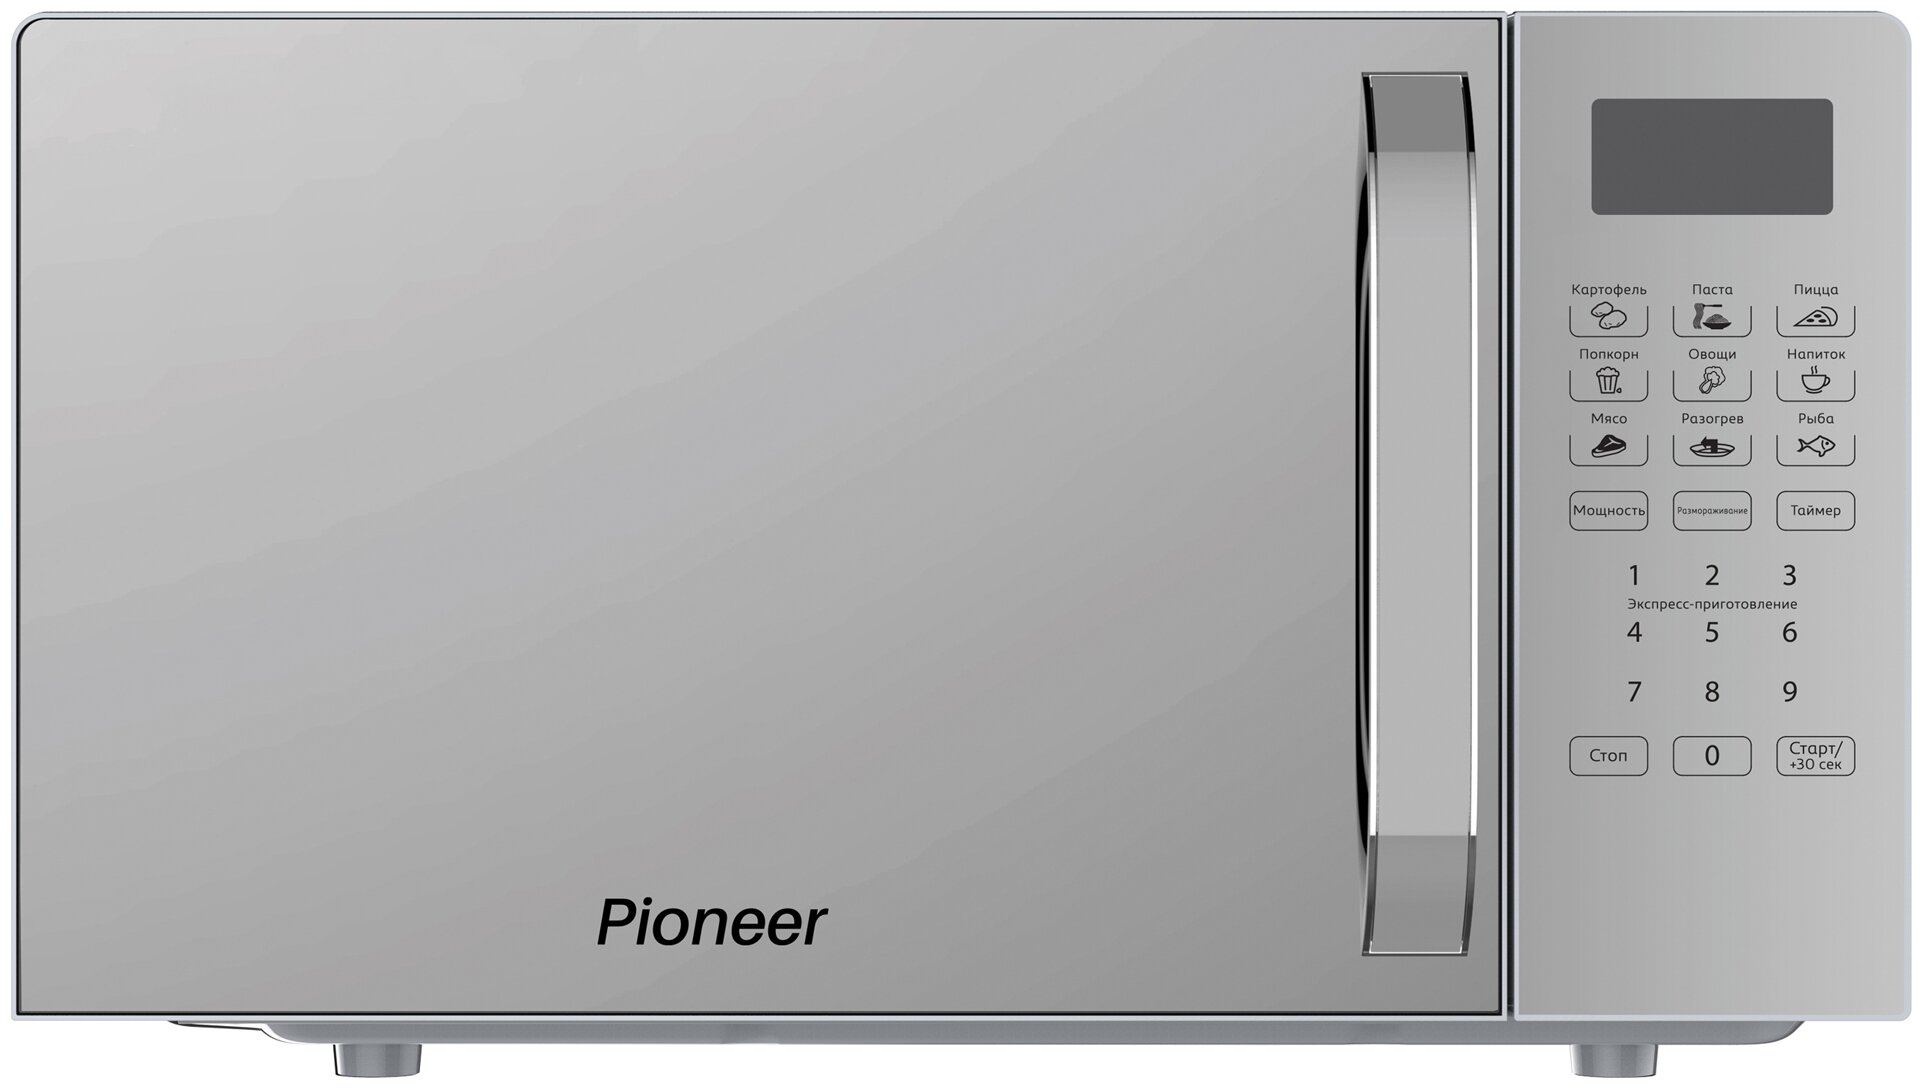 Микроволновая печь Pioneer MW255S 20 л с сенсорным управлением и LED-дисплеем, 8 автопрограмм, 5 уровней мощности, 700 Вт